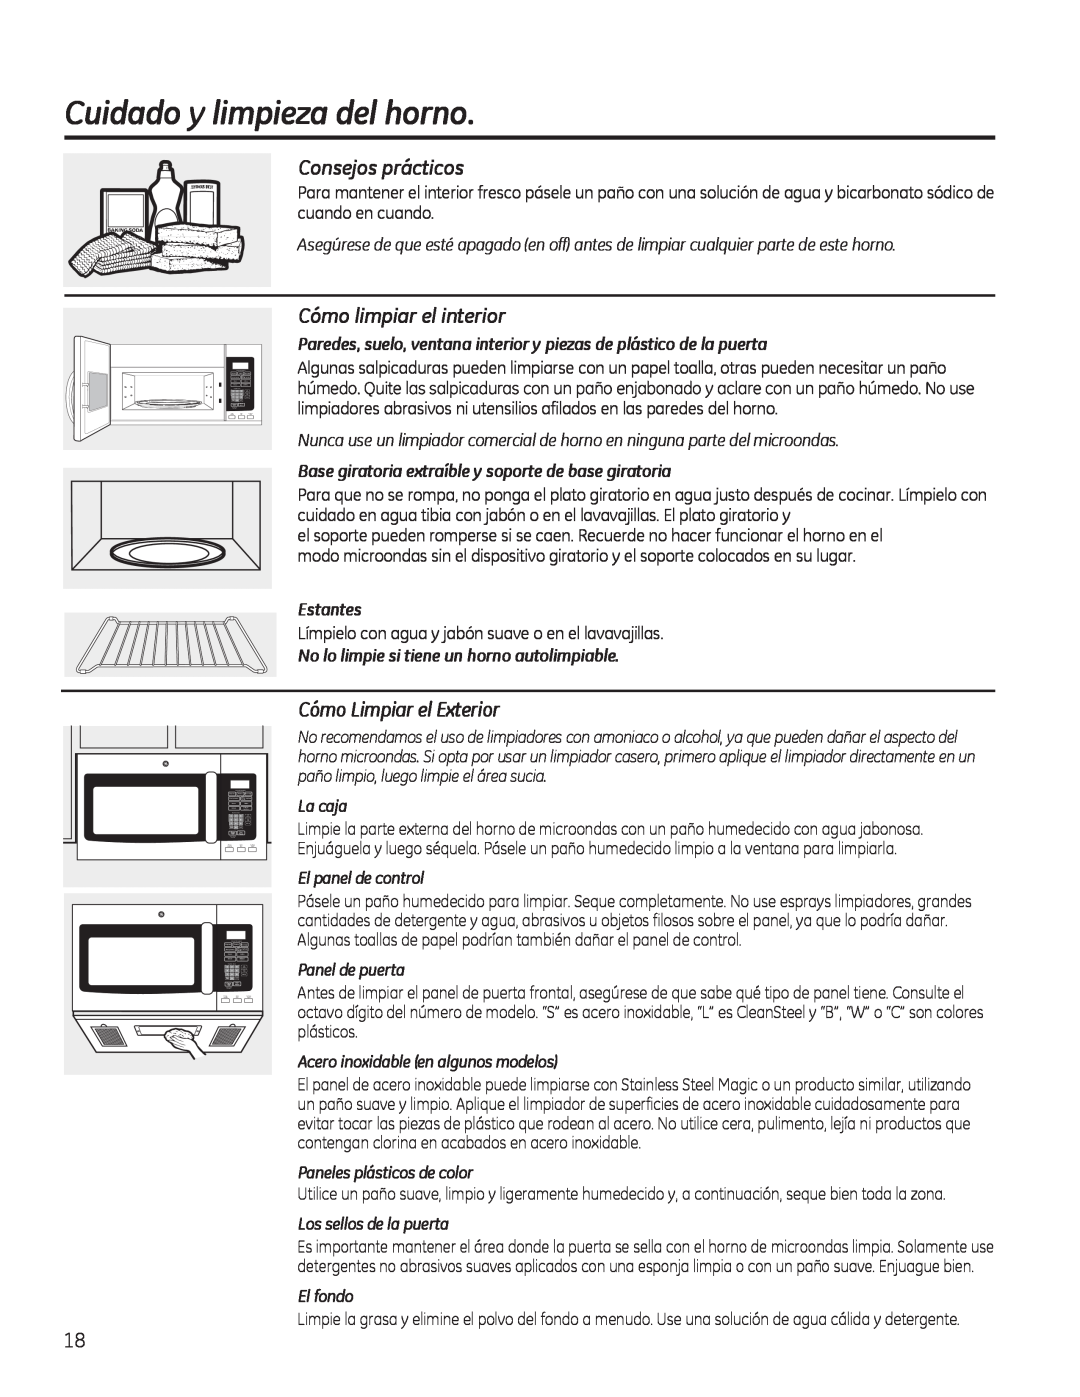 GE PVM9195 Cuidado y limpieza del horno, Consejos prácticos, Cómo limpiar el interior, Cómo Limpiar el Exterior, Estantes 